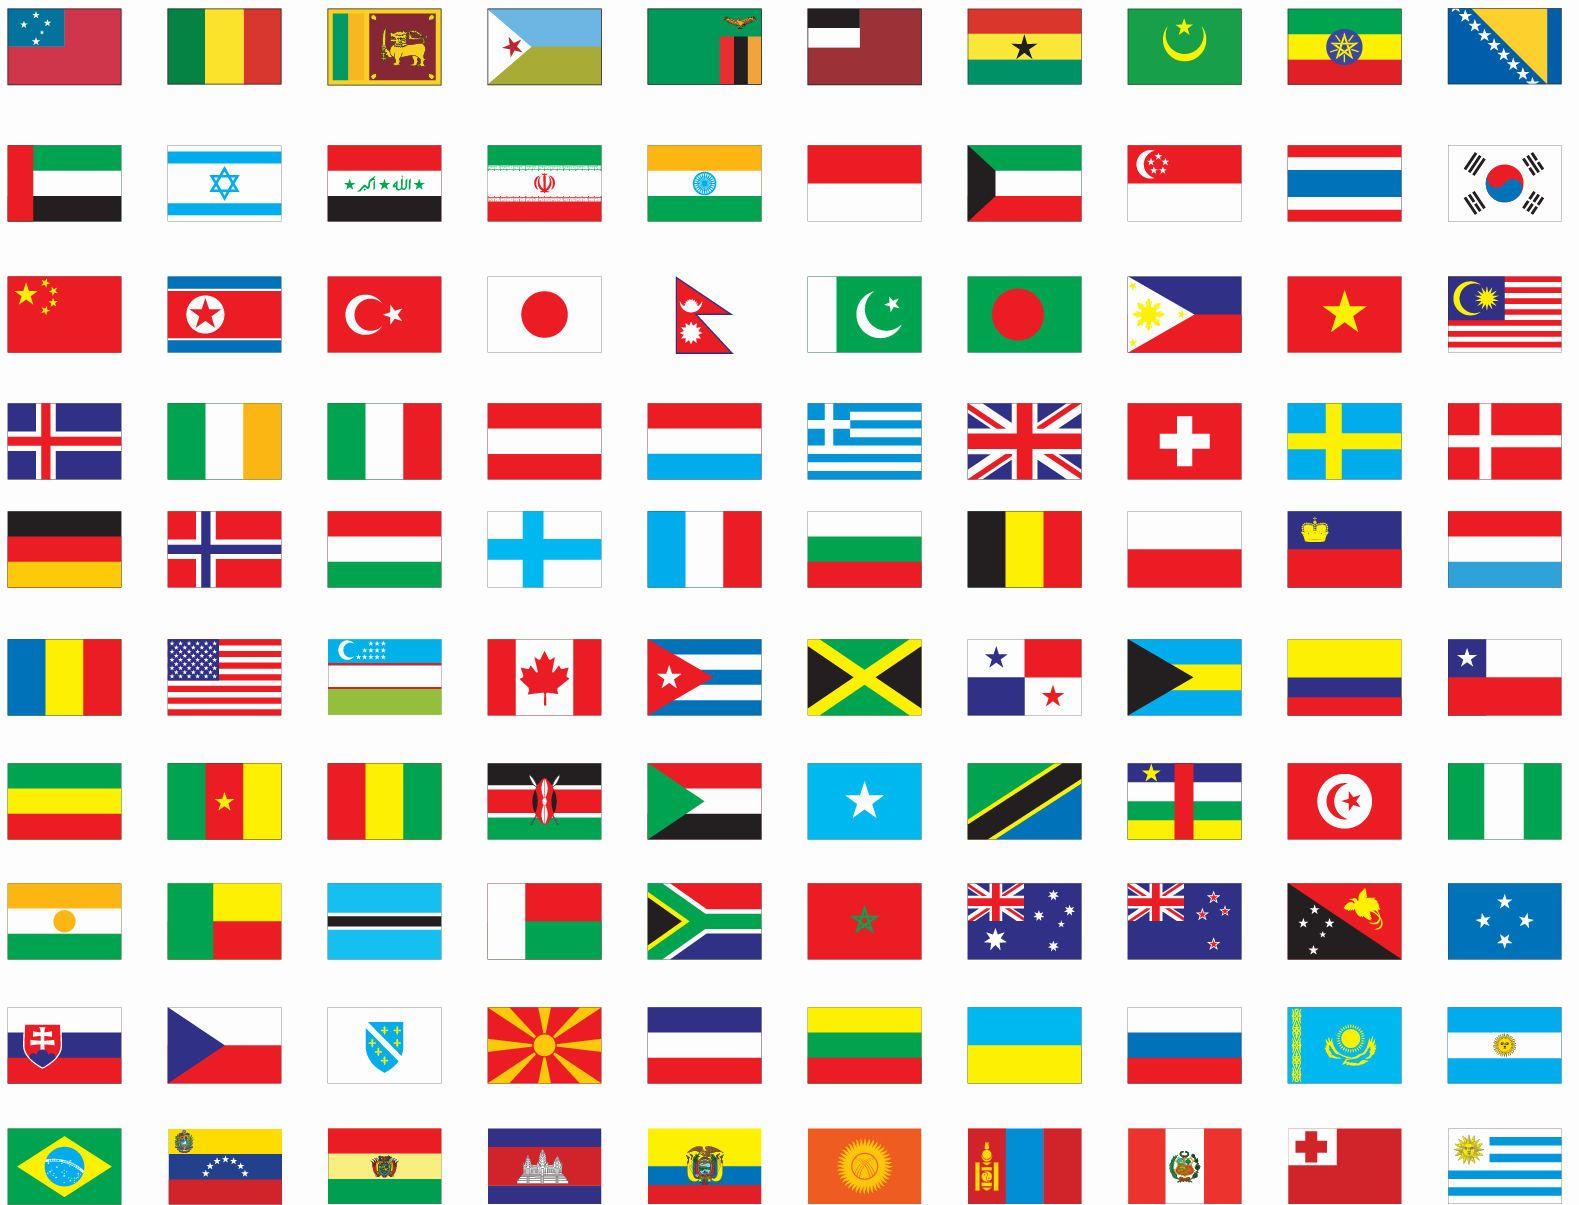 морские флаги стран мира фото с названием